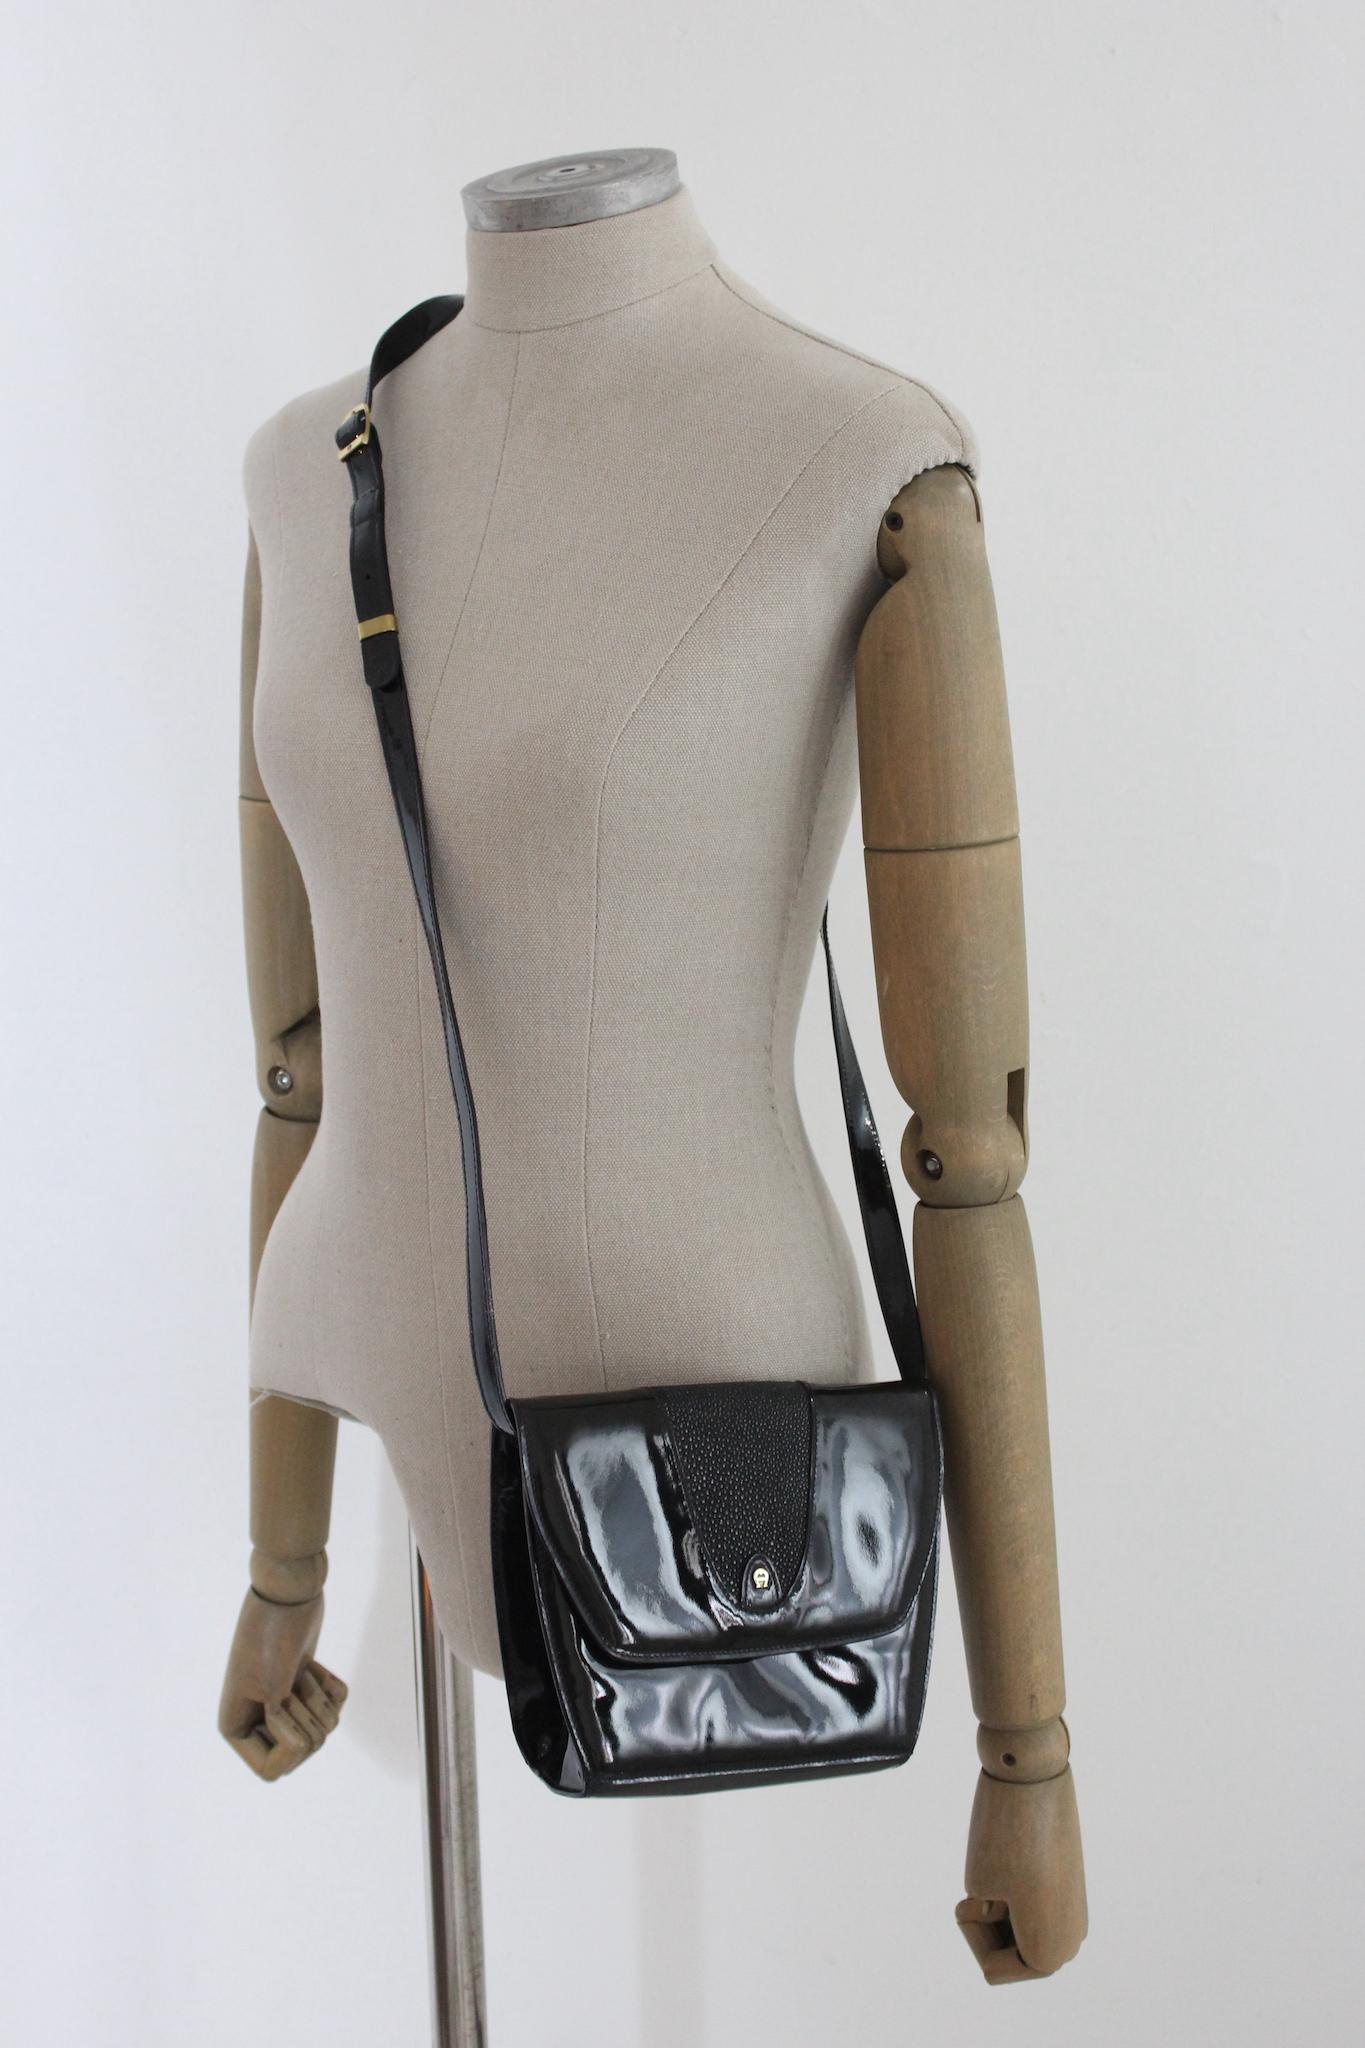 Vintage Etienne Aigner Handbags - For Sale on 1stDibs | etienne aigner bags aigner purses, vintage aigner bag